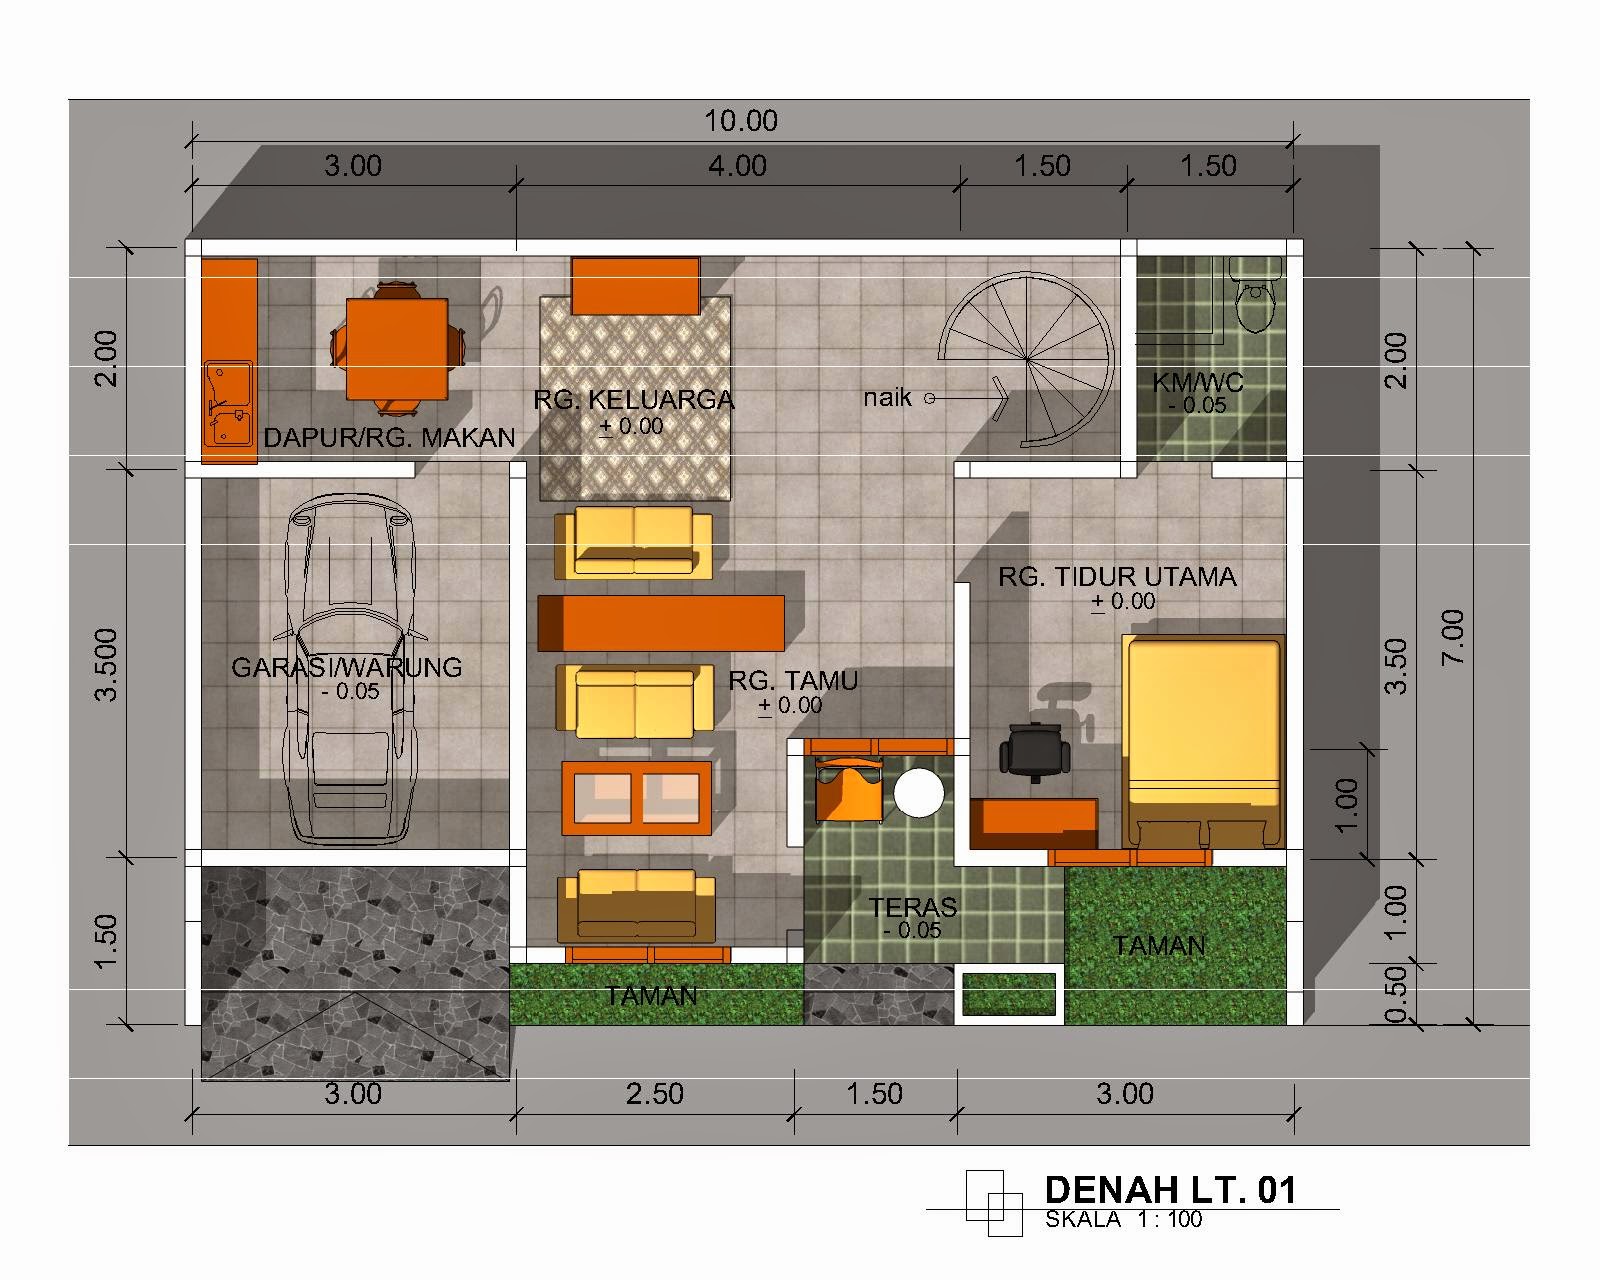 Inilah Sketsa Rumah Minimalis Terbaru Gambar Gambar Desain Rumah